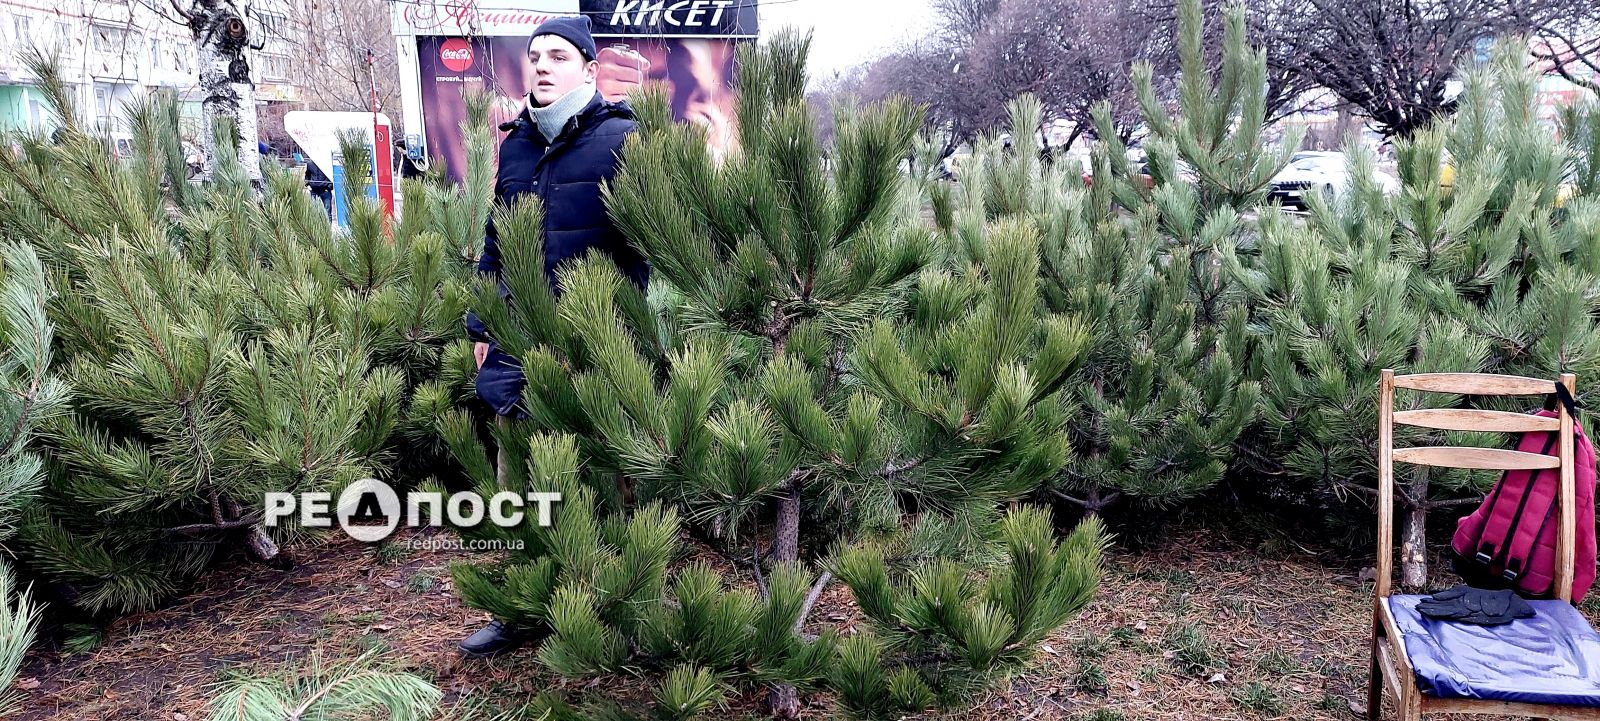 Цены на новогодние елки в Харькове